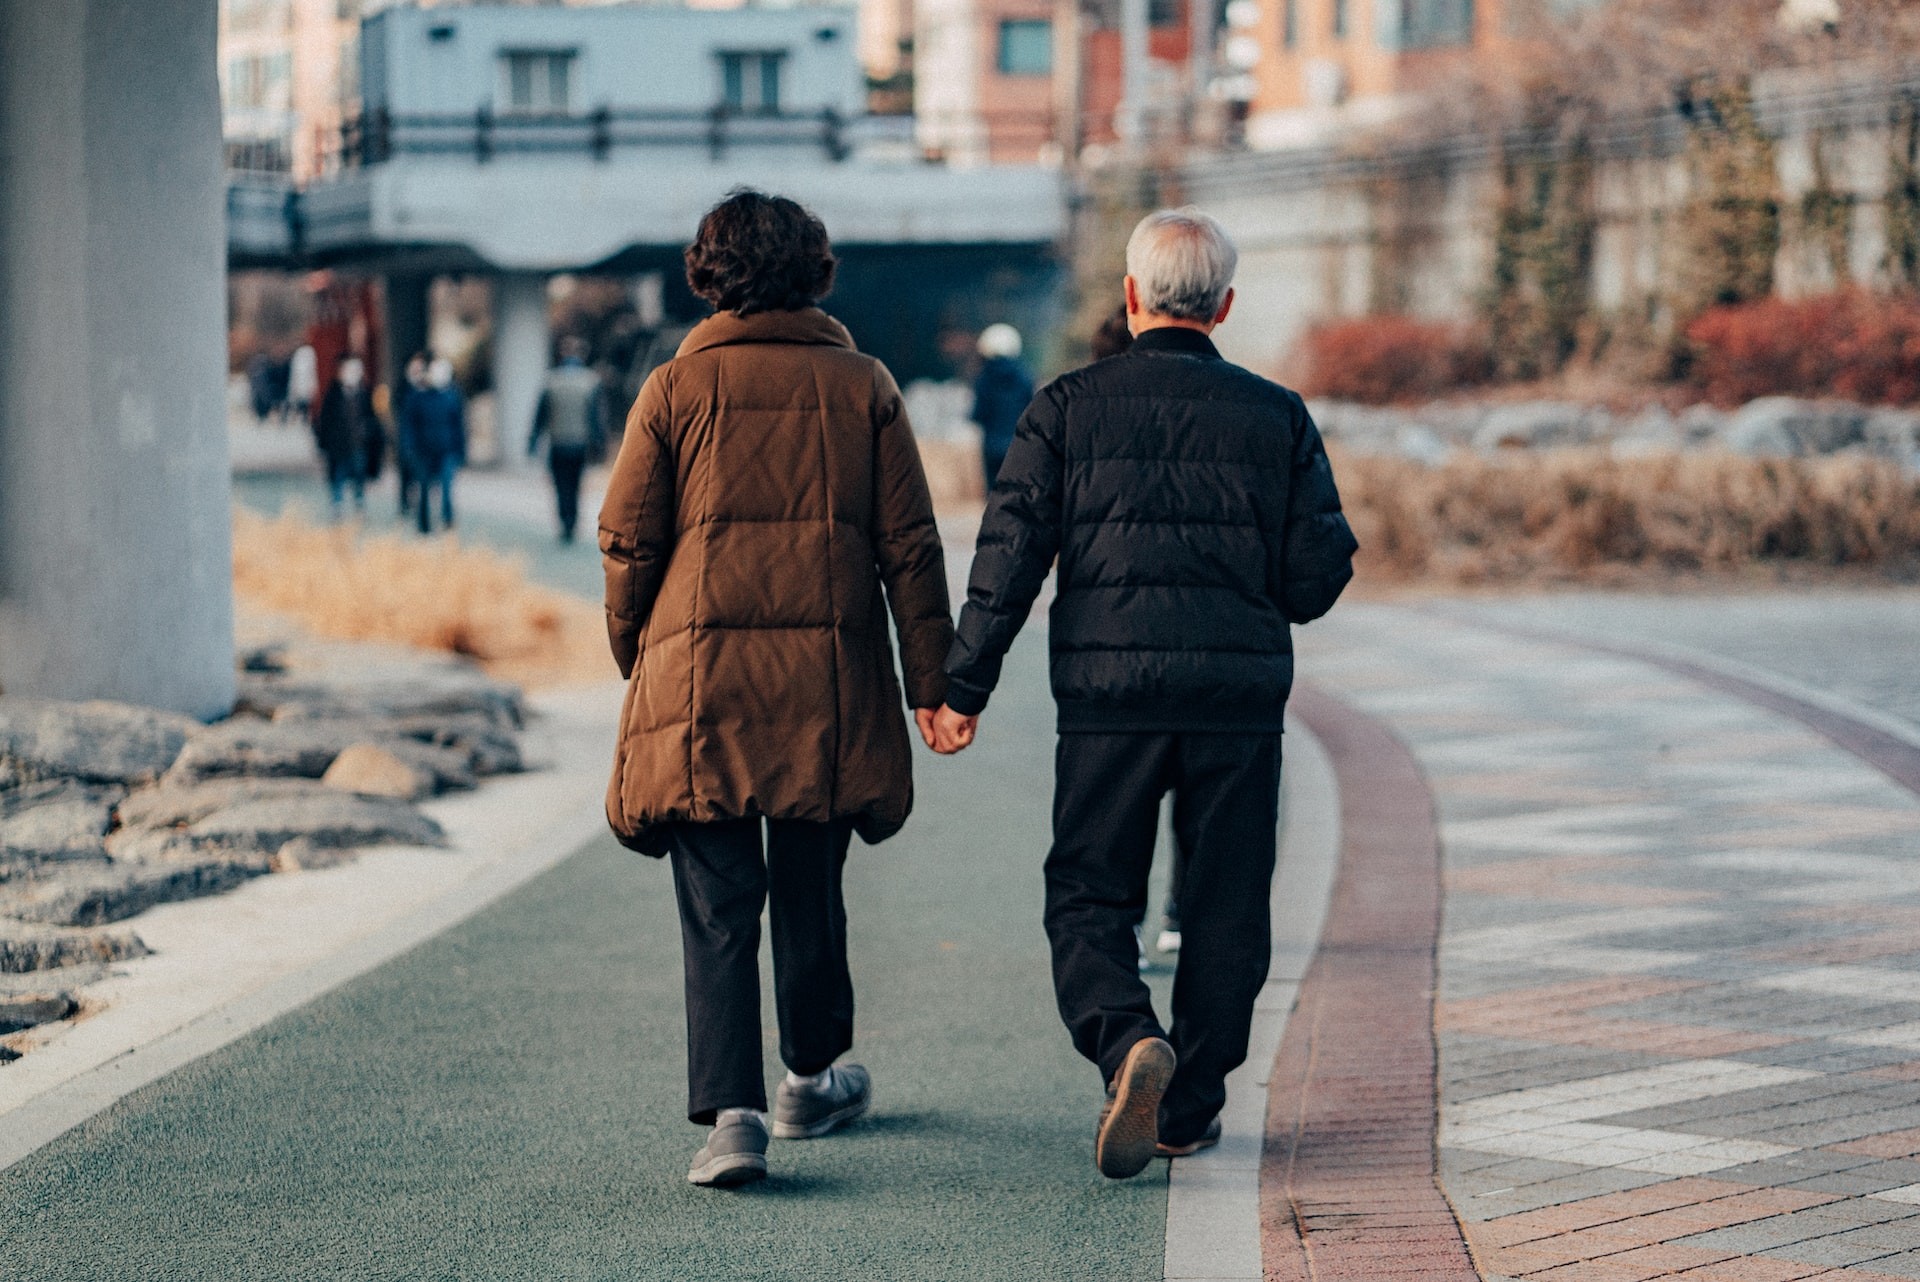 Velocidade da caminhada é uma métrica melhor para avaliar o risco de morte pela perda muscular em idosos (Foto: Daniel Bernard/Unsplash)